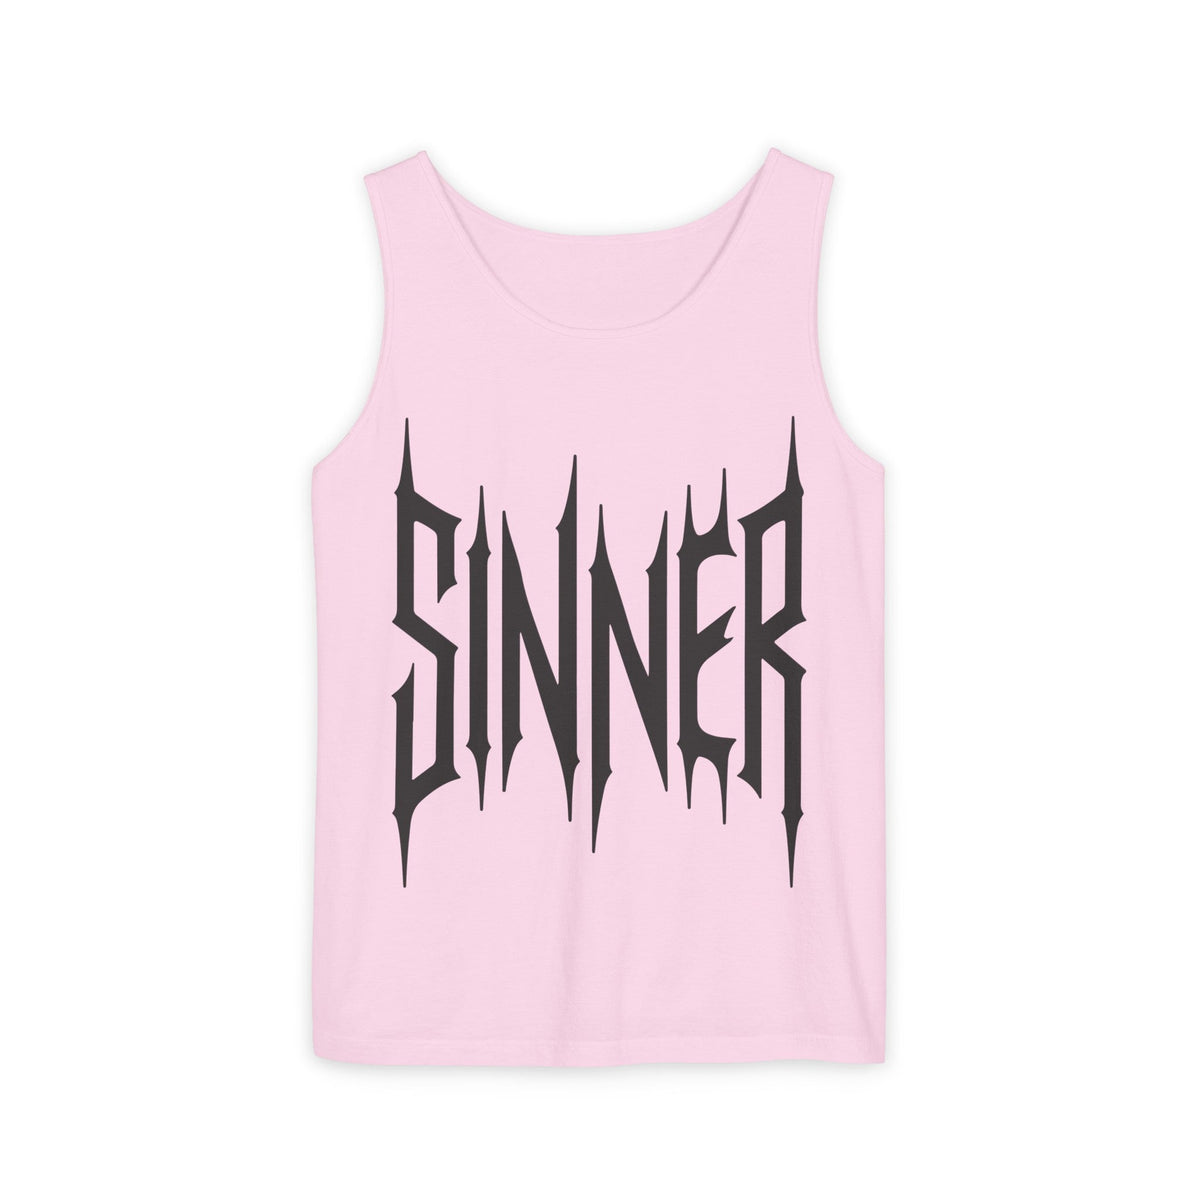 Sinner Unisex Tank - Goth Cloth Co.Tank Top18463220053239418215